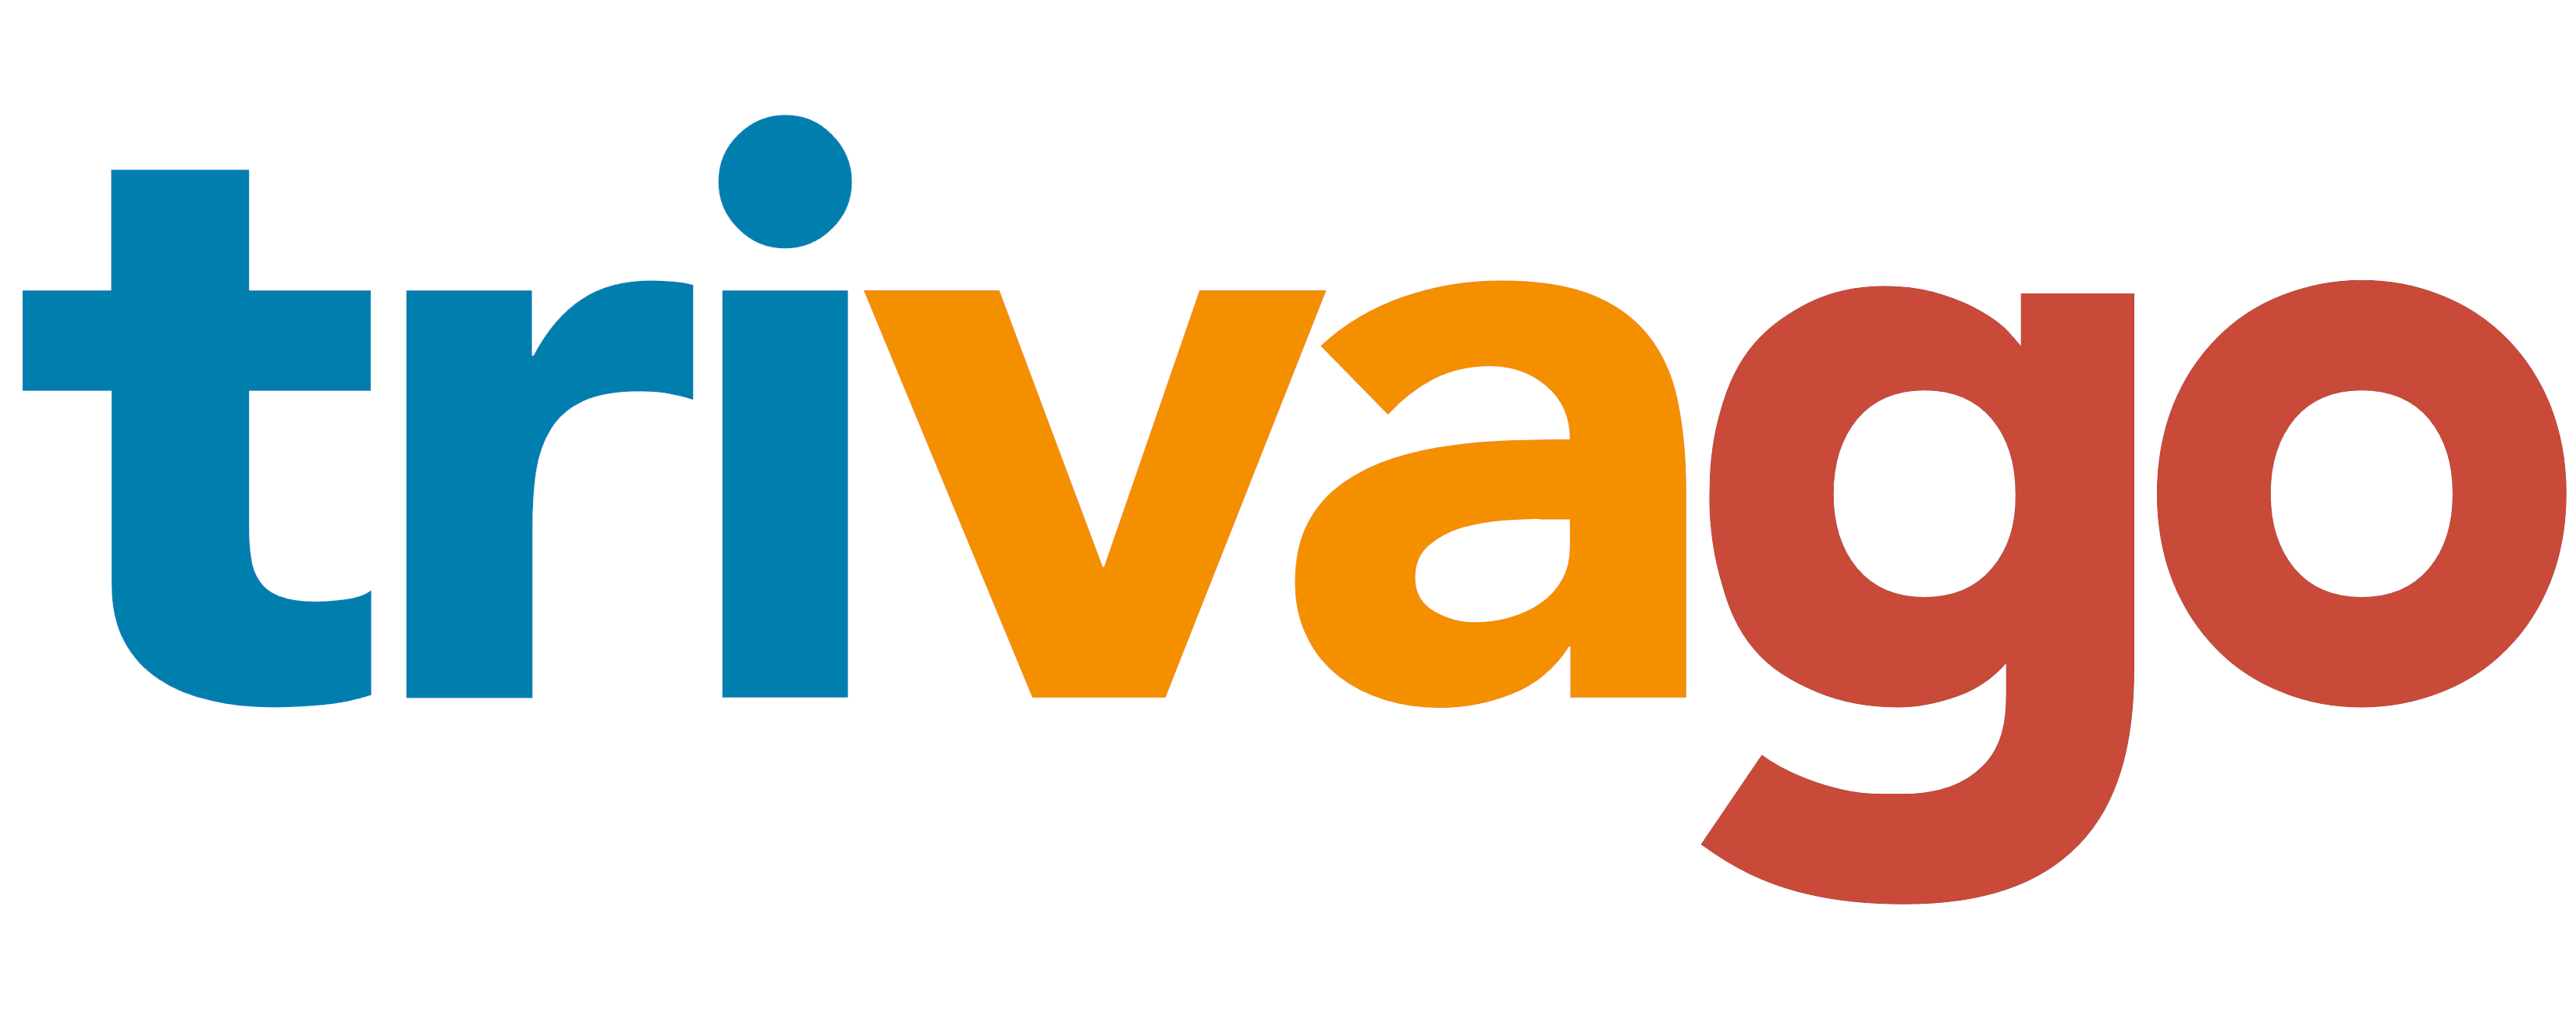 Trivago logo, logotype